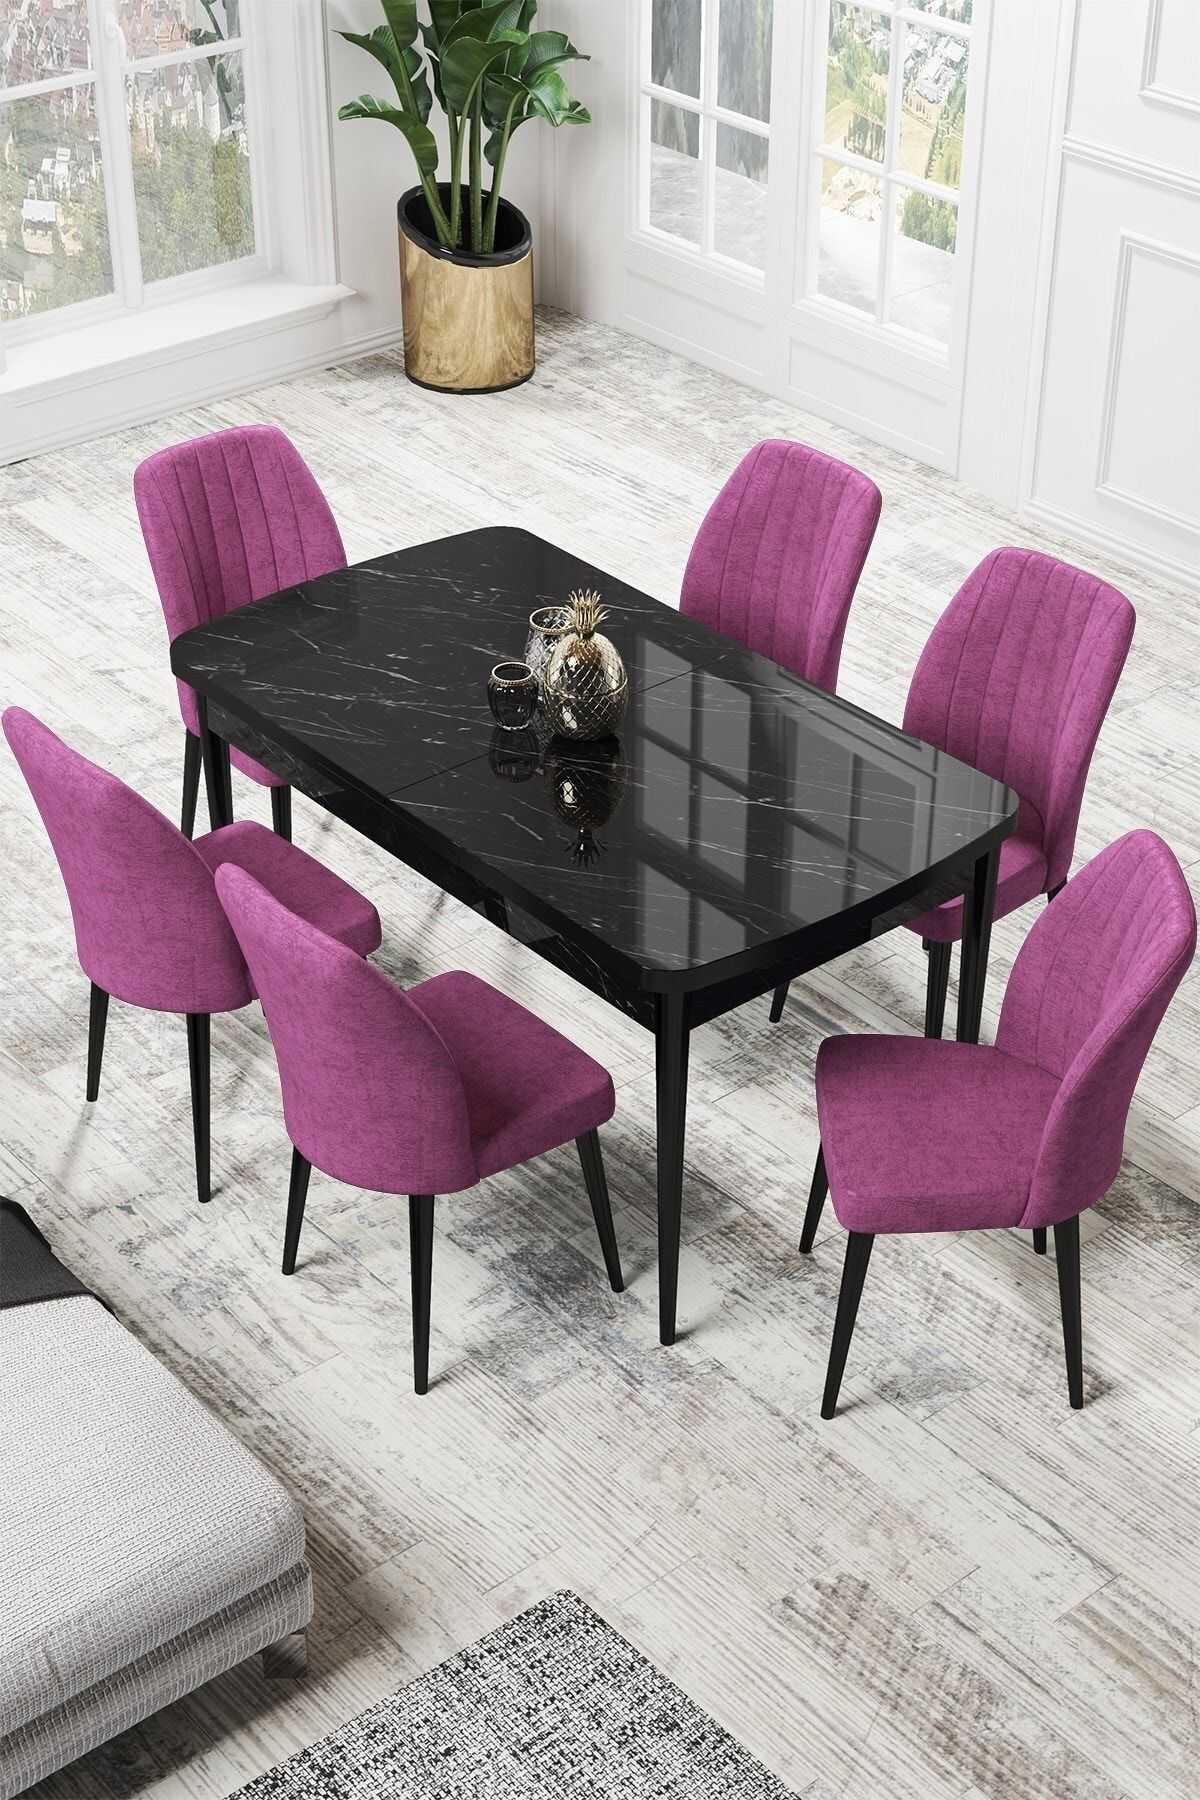 Canisa Par Serisi 70x114, Açılabilir Mdf Mutfak Masası Siyah Mermer Desen Masa Ve 6 Mor Sandalye Takımı